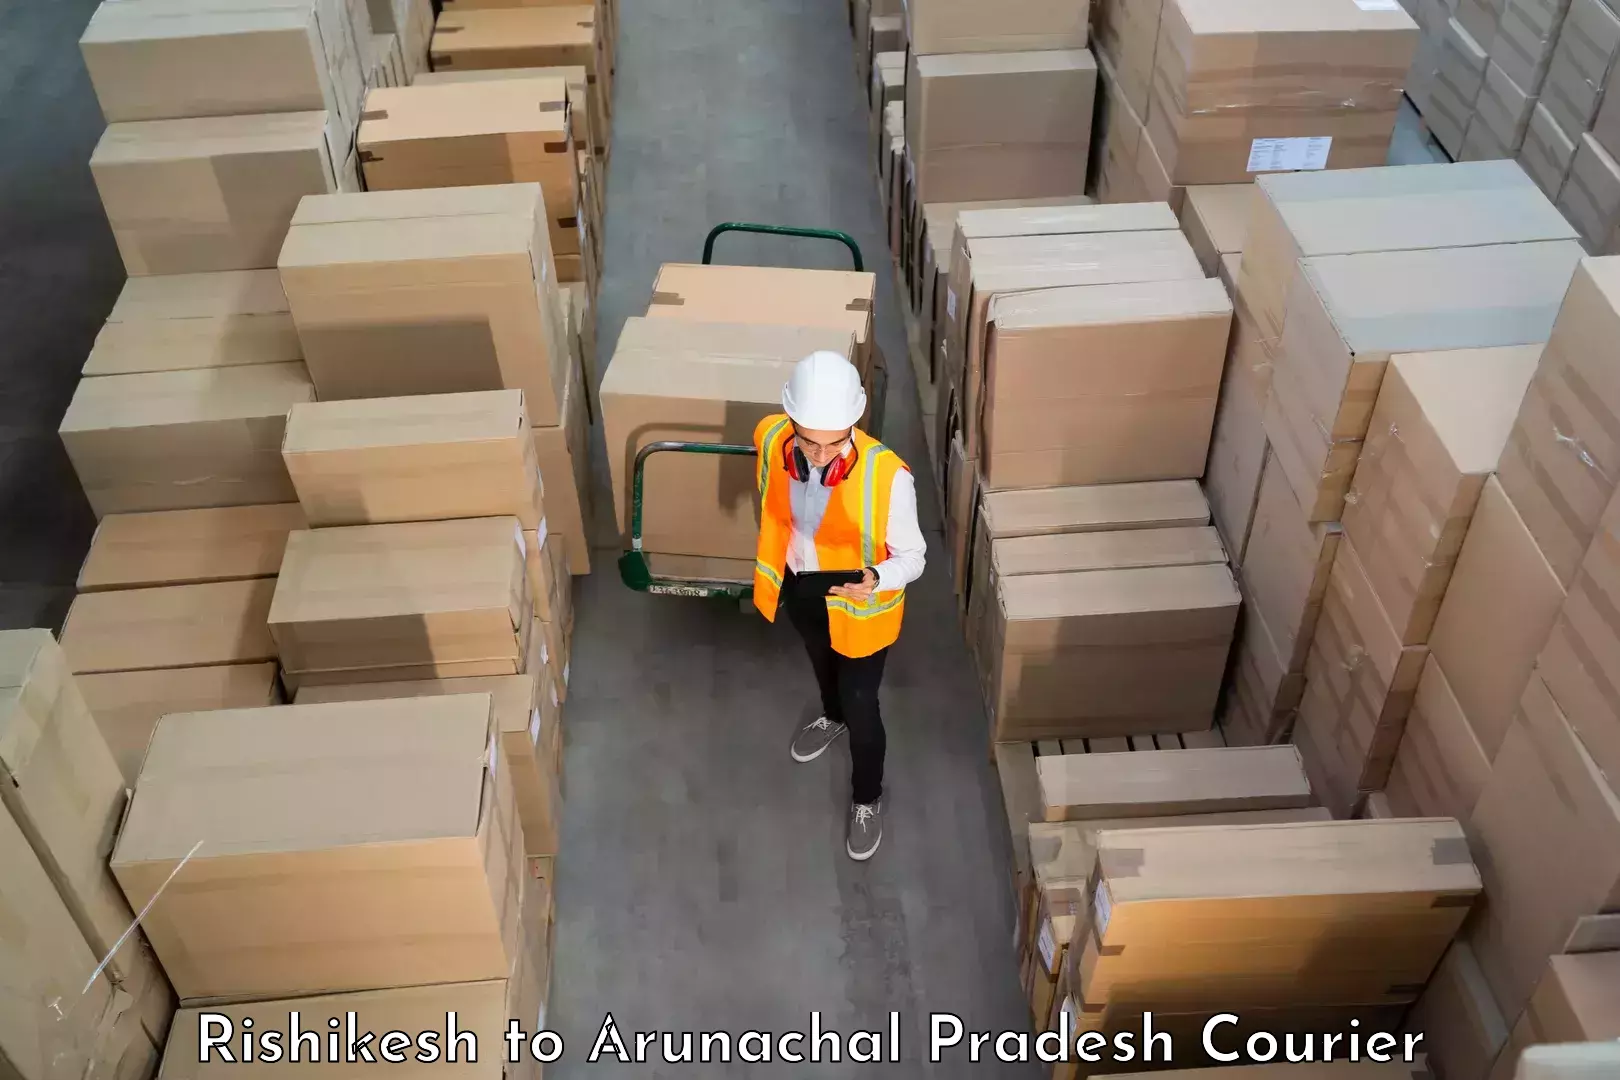 Household goods transport service Rishikesh to Arunachal Pradesh